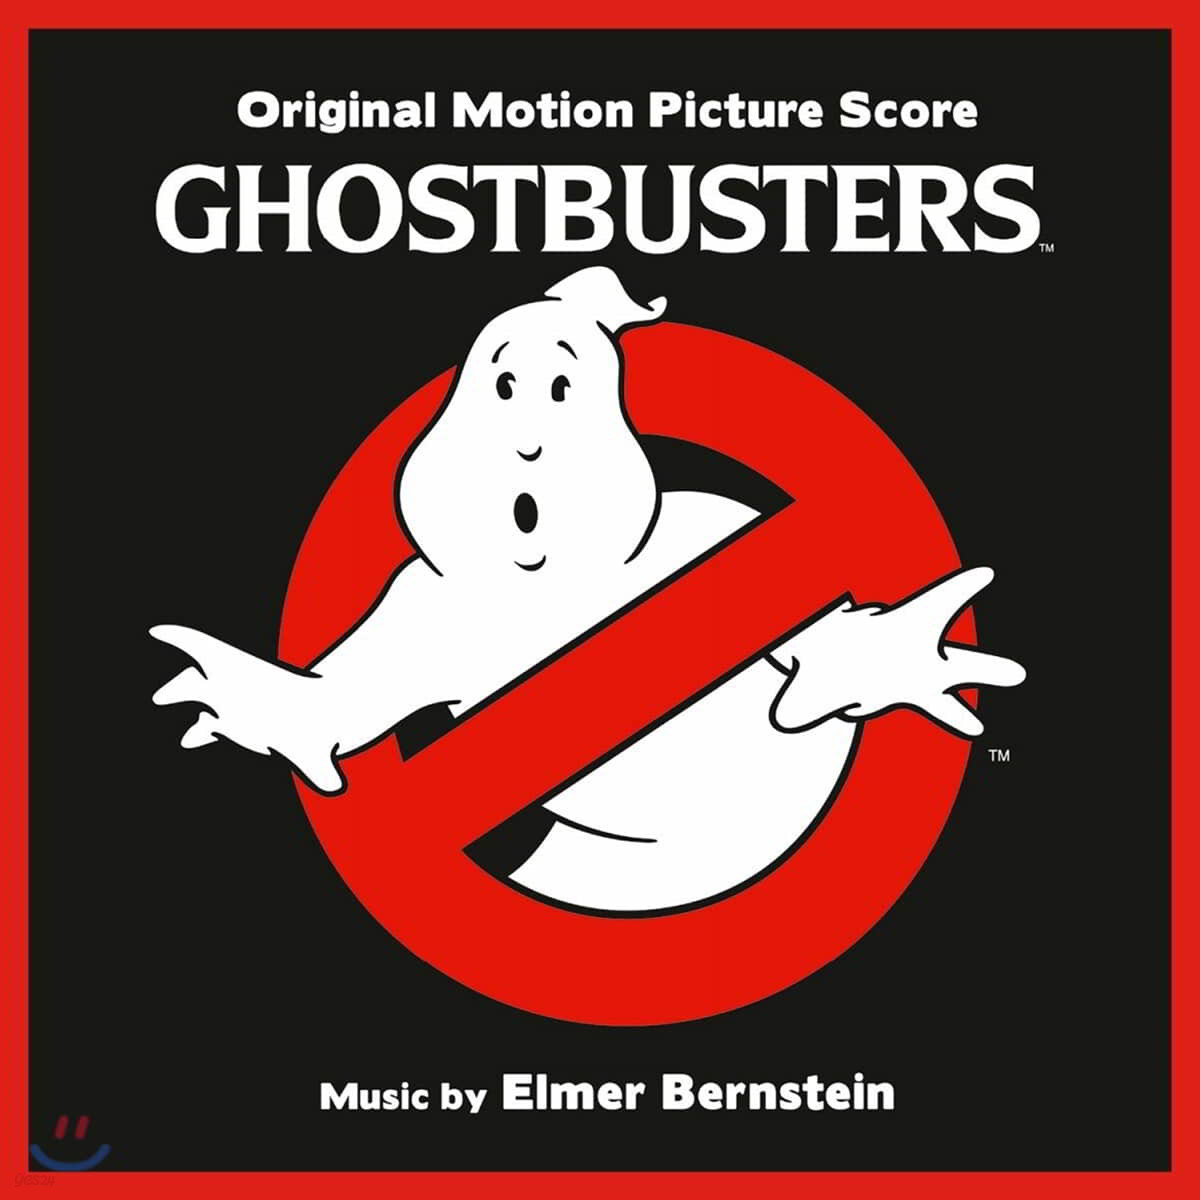 고스트 버스터즈 영화음악 (Ghostbusters OST by Elmer Bernstein)